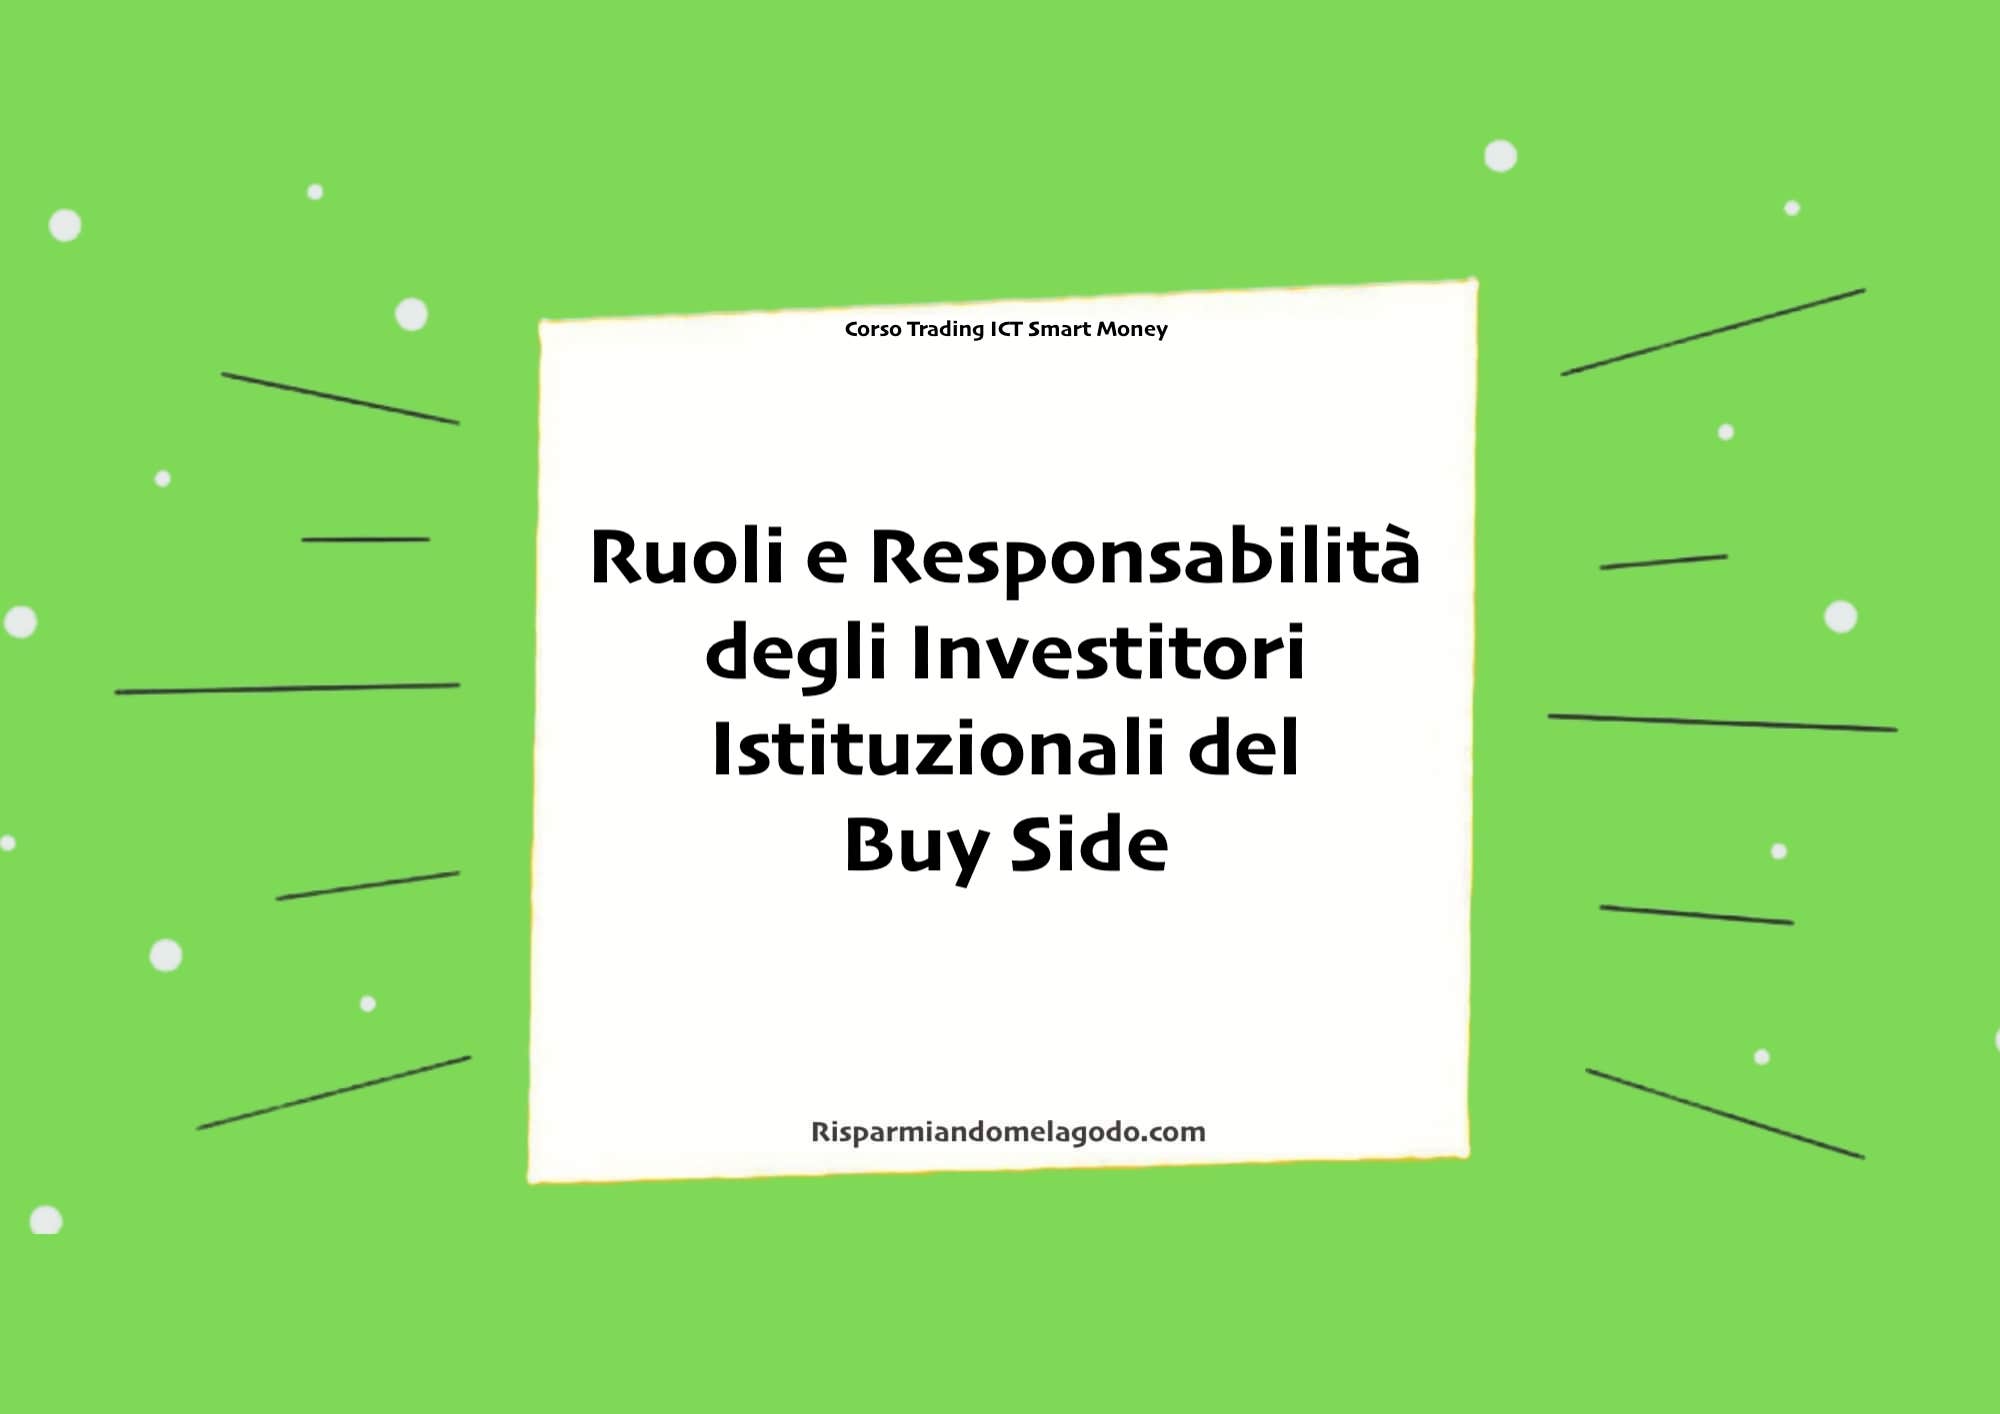 Ruoli e Responsabilità degli Investitori Istituzionali del Buy Side